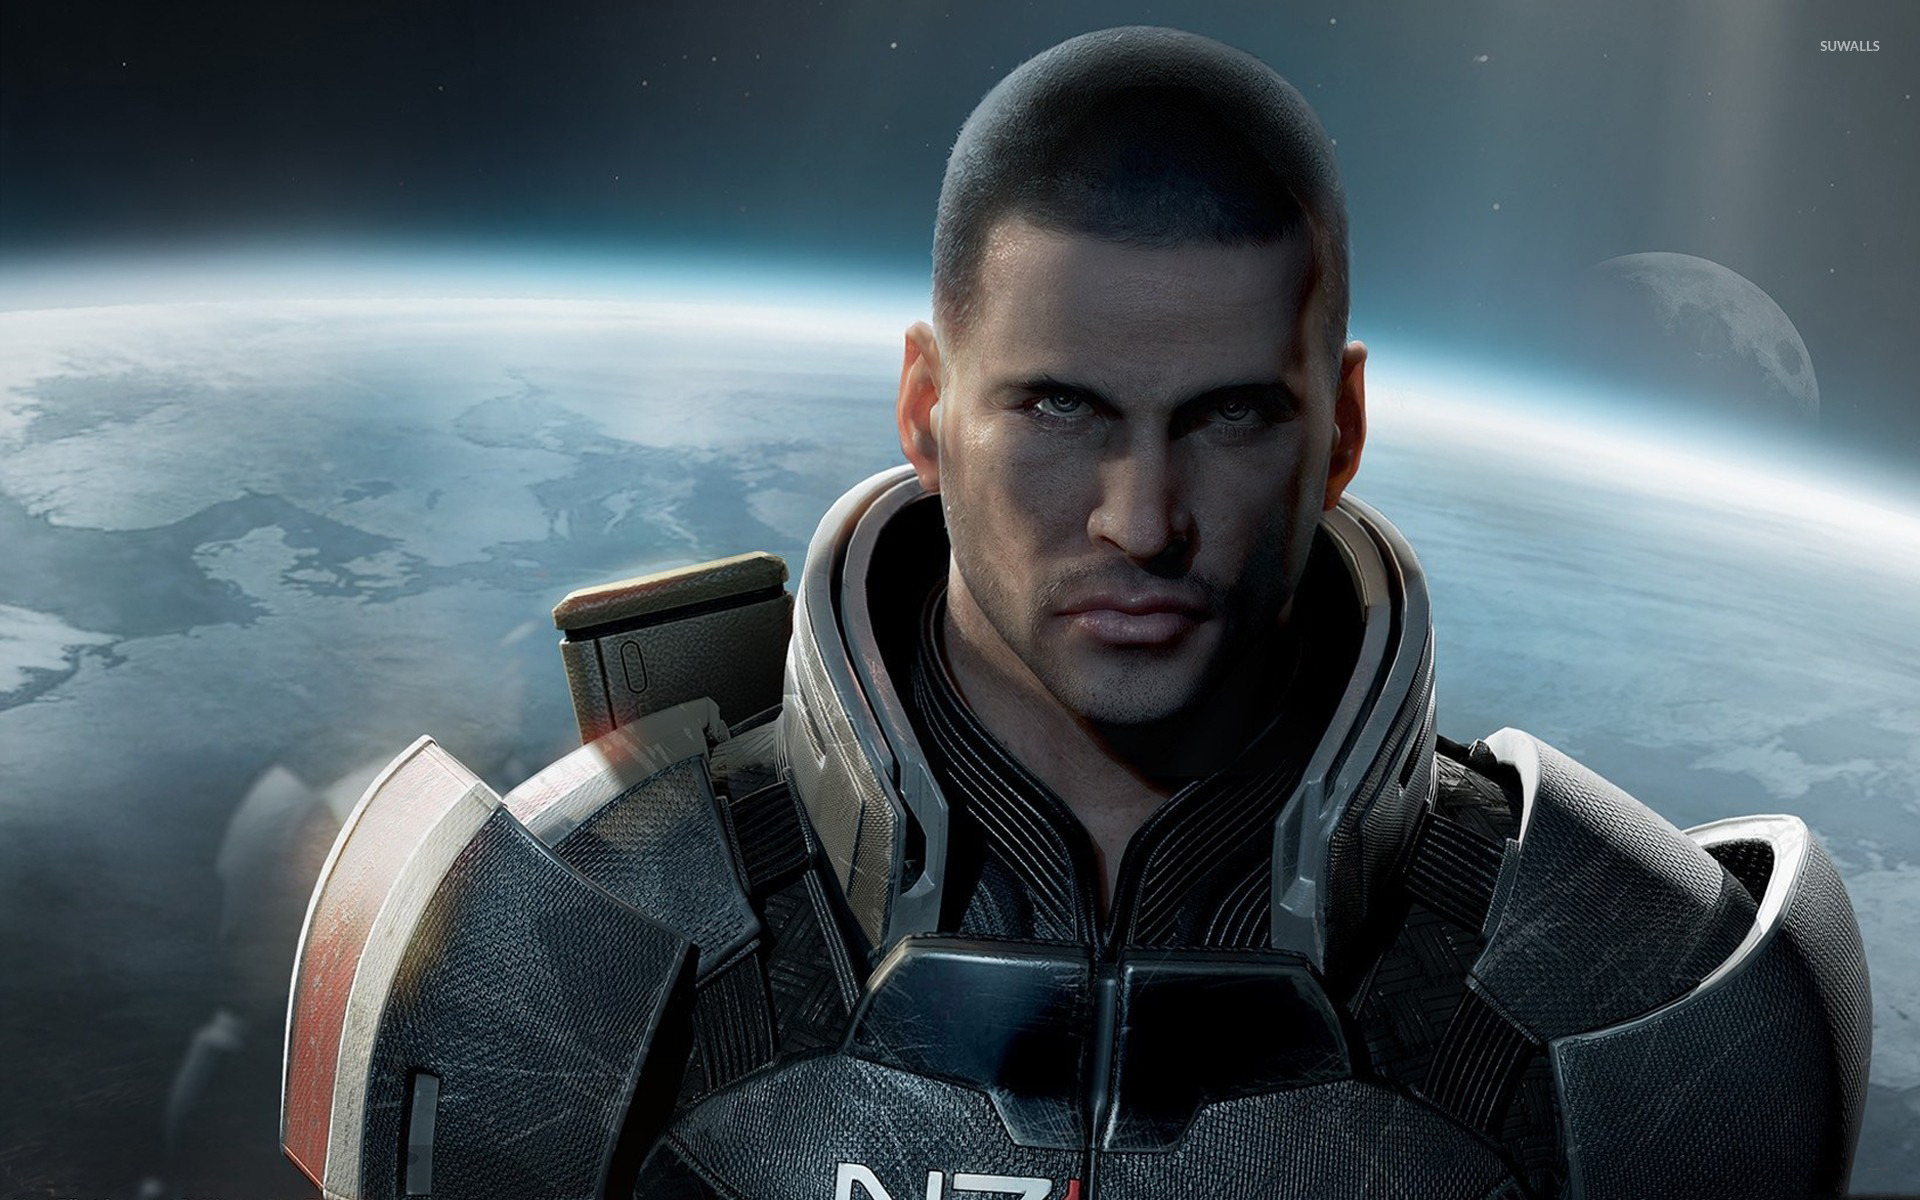 Mass Effect Shepard Wallpapers